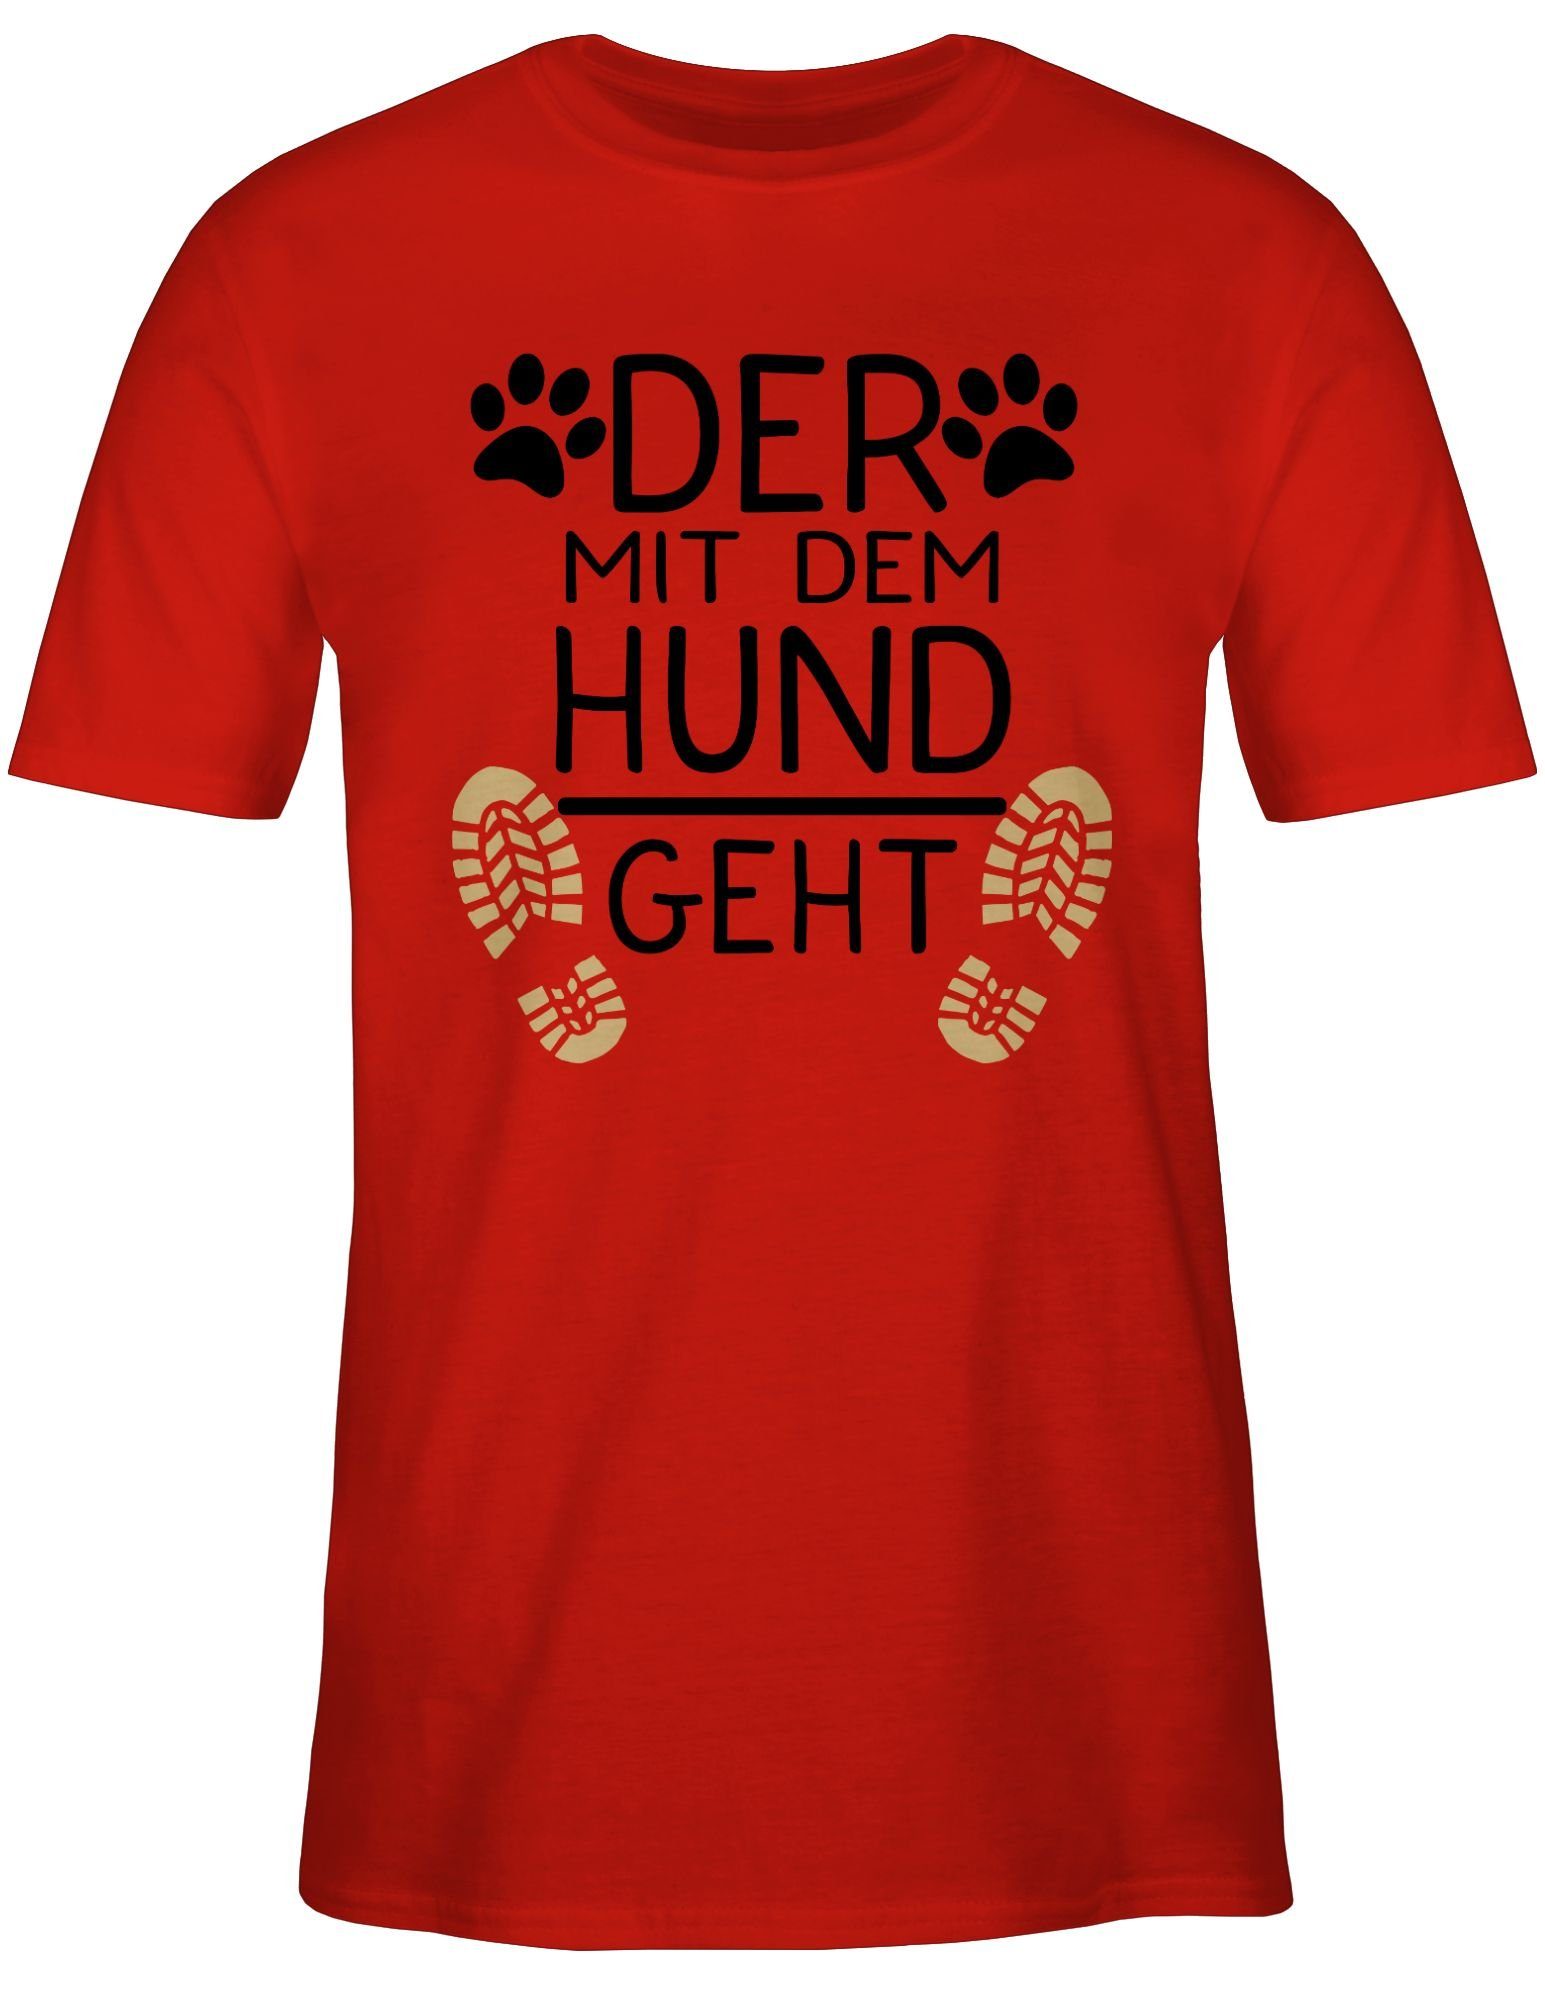 Hundebesitzer für T-Shirt - Shirtracer Der schwarz 03 mit Geschenk Hund geht Rot dem